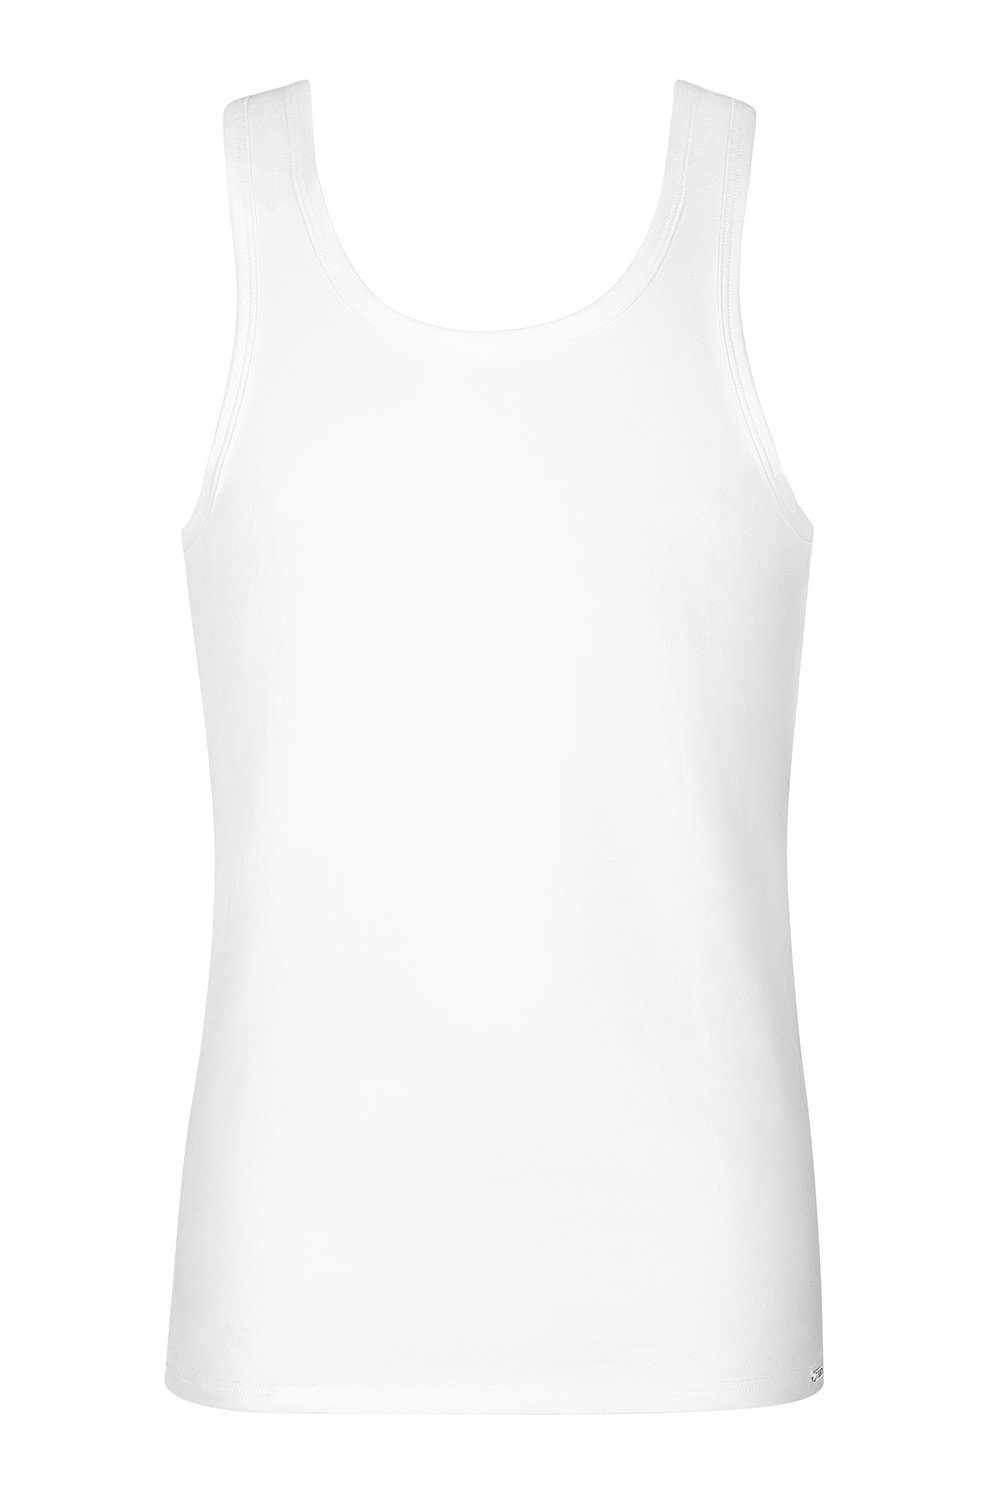 Lisca Achselhemd Unterhemd 31009 weiß